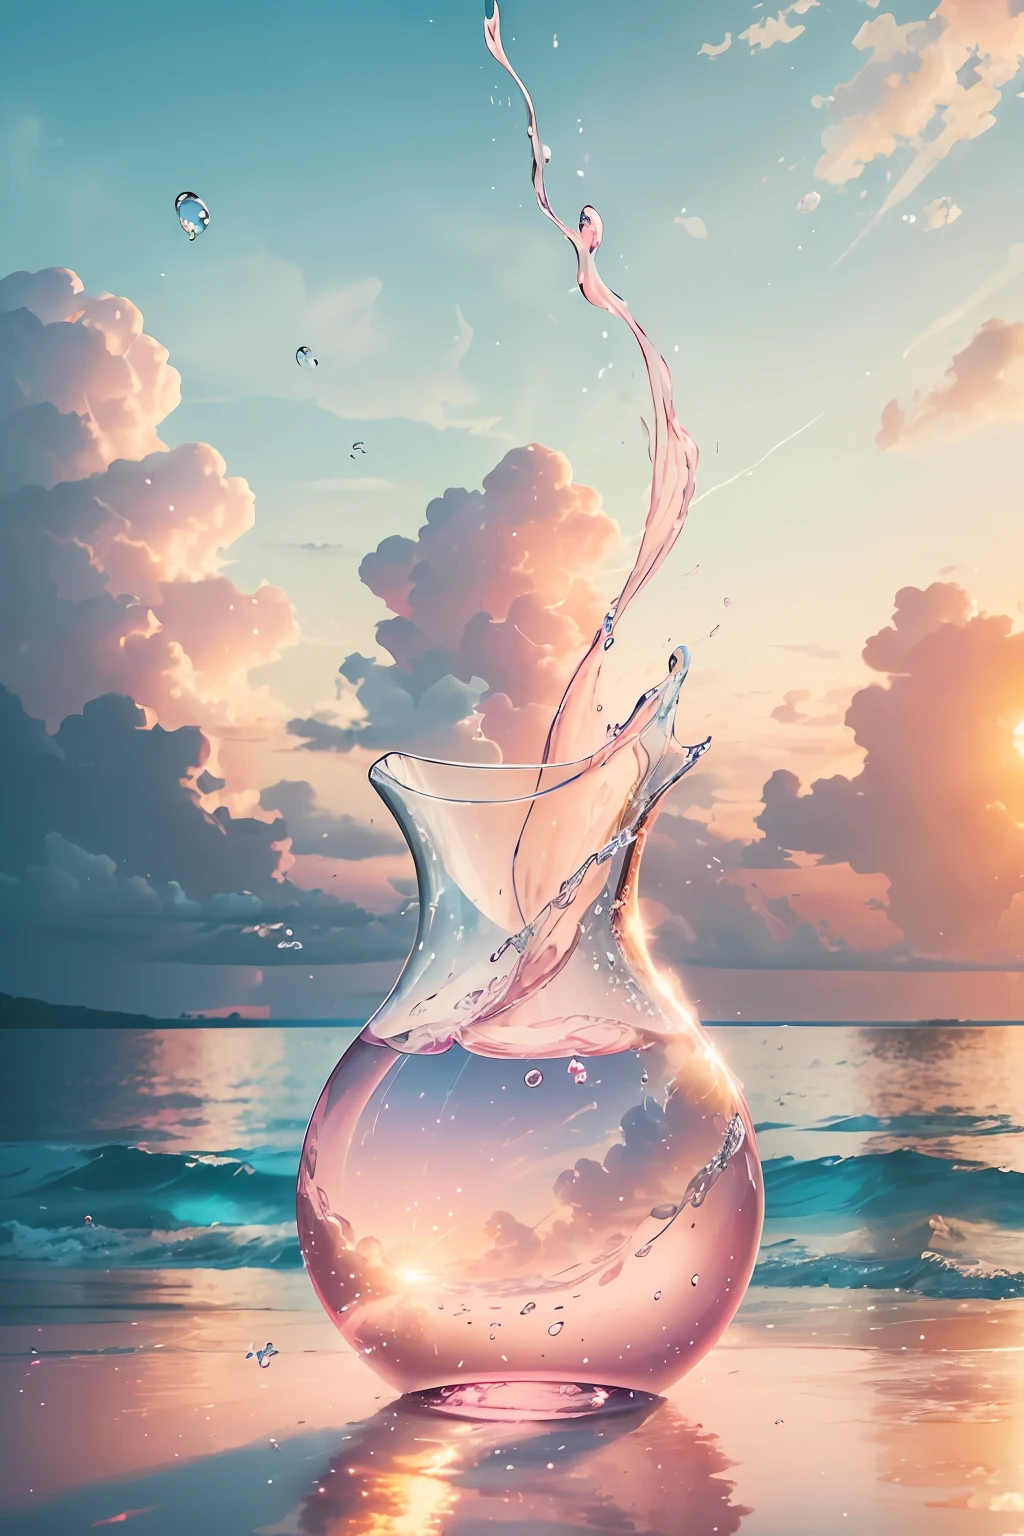 創建 4K 9:16 張圖片描繪了熱帶海灘上令人驚嘆的日出, 海岸邊有輕柔的海浪和棕櫚樹. 調色板應該充滿活力，傳達更新和積極能量的感覺.  想像一個透明的玻璃花瓶，裡面充滿了柔和的粉紅色雲彩. 雲是由微小的氣泡組成的, 每一個都反射著光的火花. 可以看到氣泡在不斷的移動, 在花瓶內移動和旋轉. 但儘管它們的本質是短暫的, 它們給花瓶本身留下了持久的印象. 當光線透過粉紅色的雲彩, 它在玻璃上投射出柔和的光芒, 改變其本質. 就像泡泡一樣, 歡樂的時刻可能轉瞬即逝, 但它們給你靈魂留下的印象就像是柔和的粉紅色雲彩, 照亮你的本質並永遠改變你.